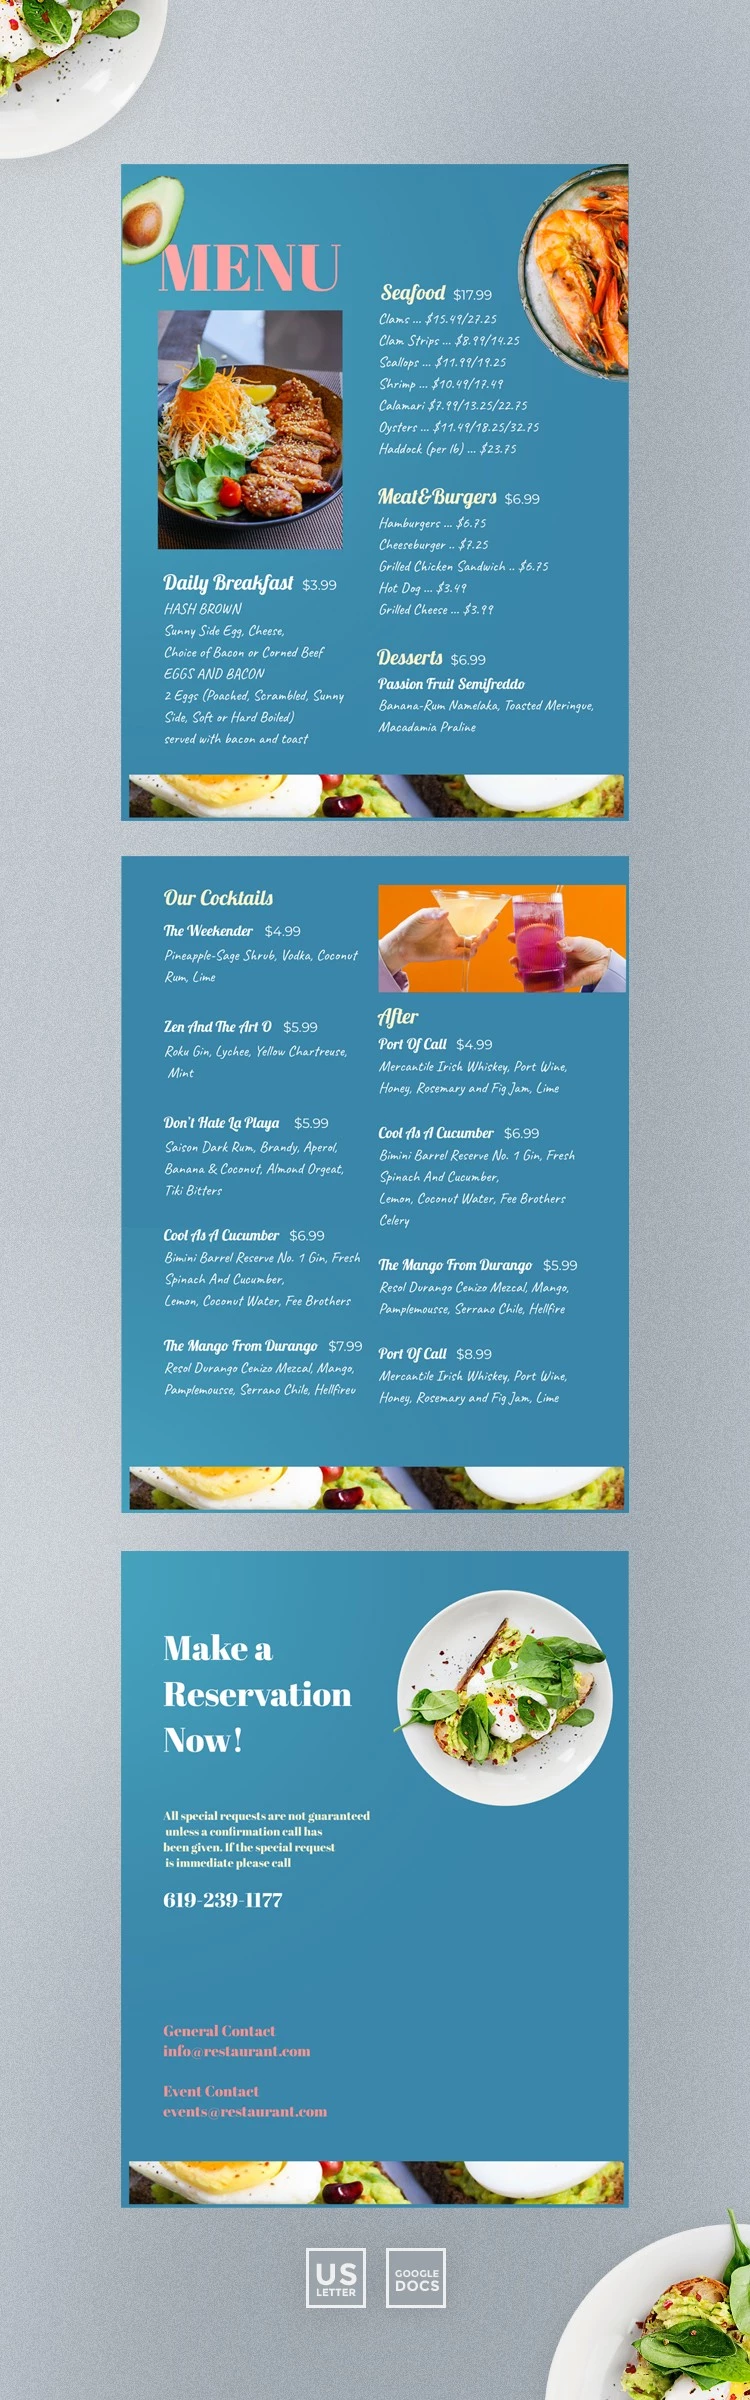 Progetto di design del menu del ristorante - free Google Docs Template - 10061509